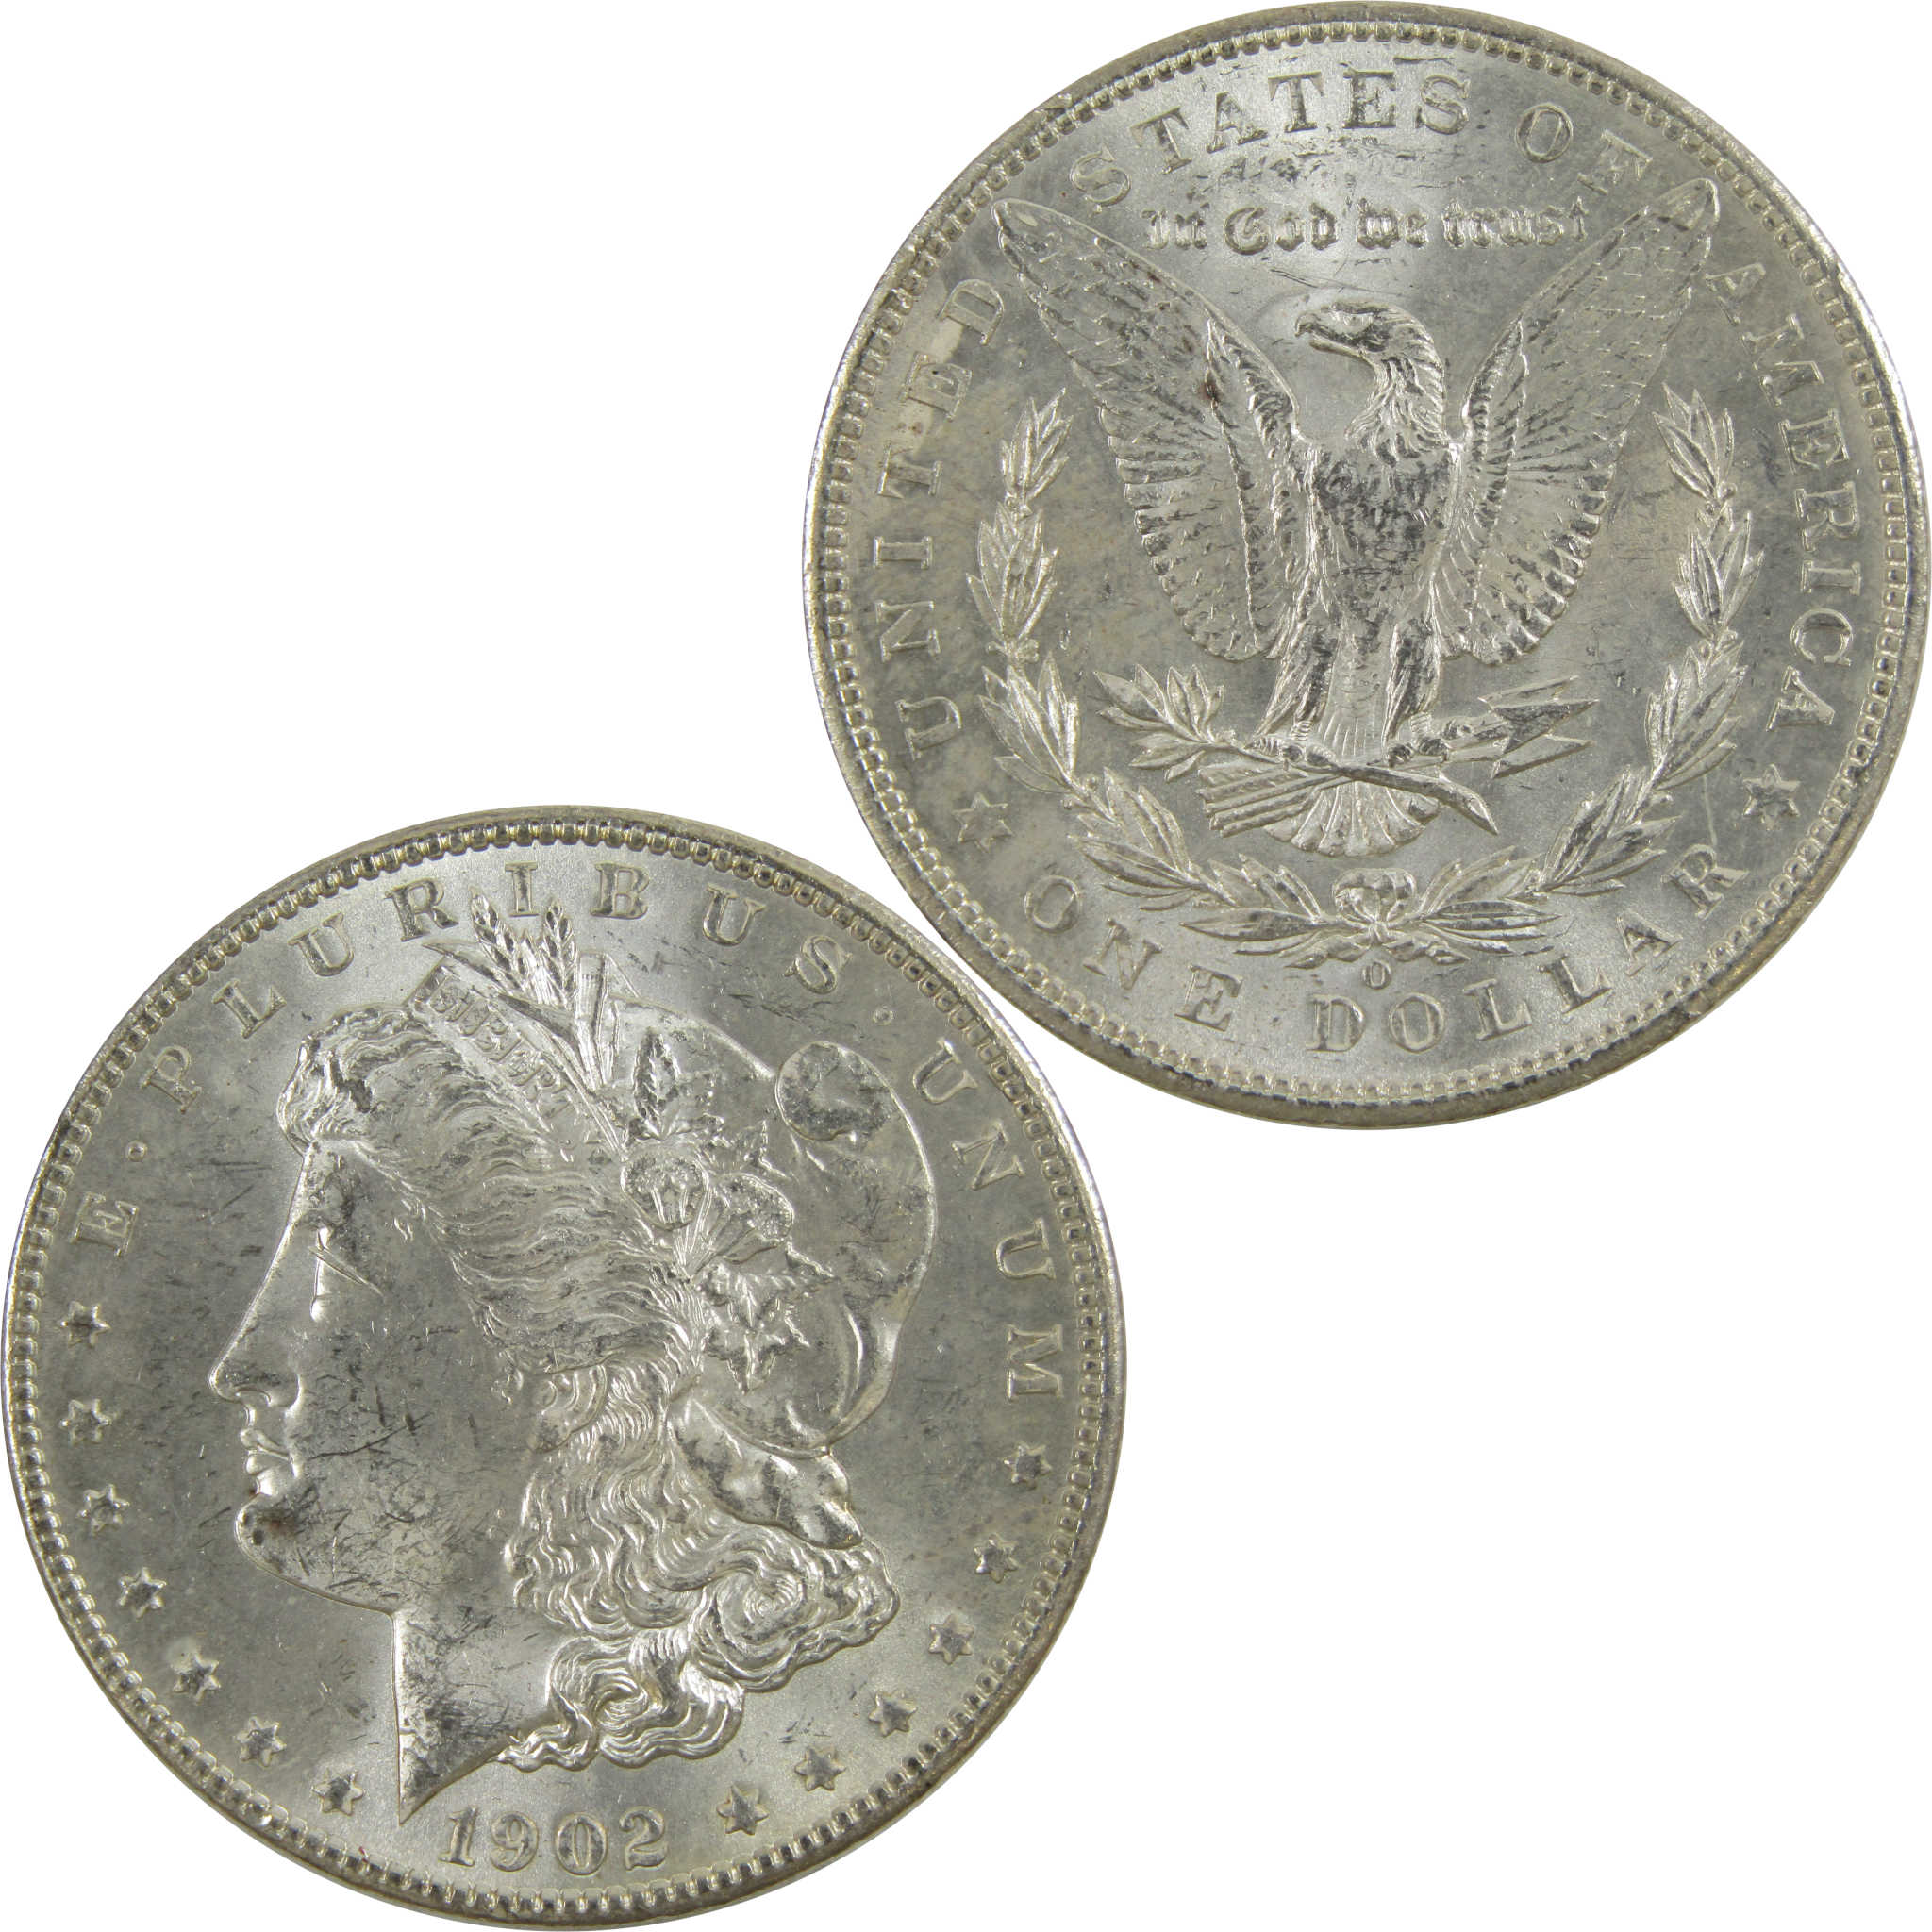 1902 O Morgan Dollar BU Uncirculated 90% Silver $1 Coin SKU:I5209 - Morgan coin - Morgan silver dollar - Morgan silver dollar for sale - Profile Coins &amp; Collectibles